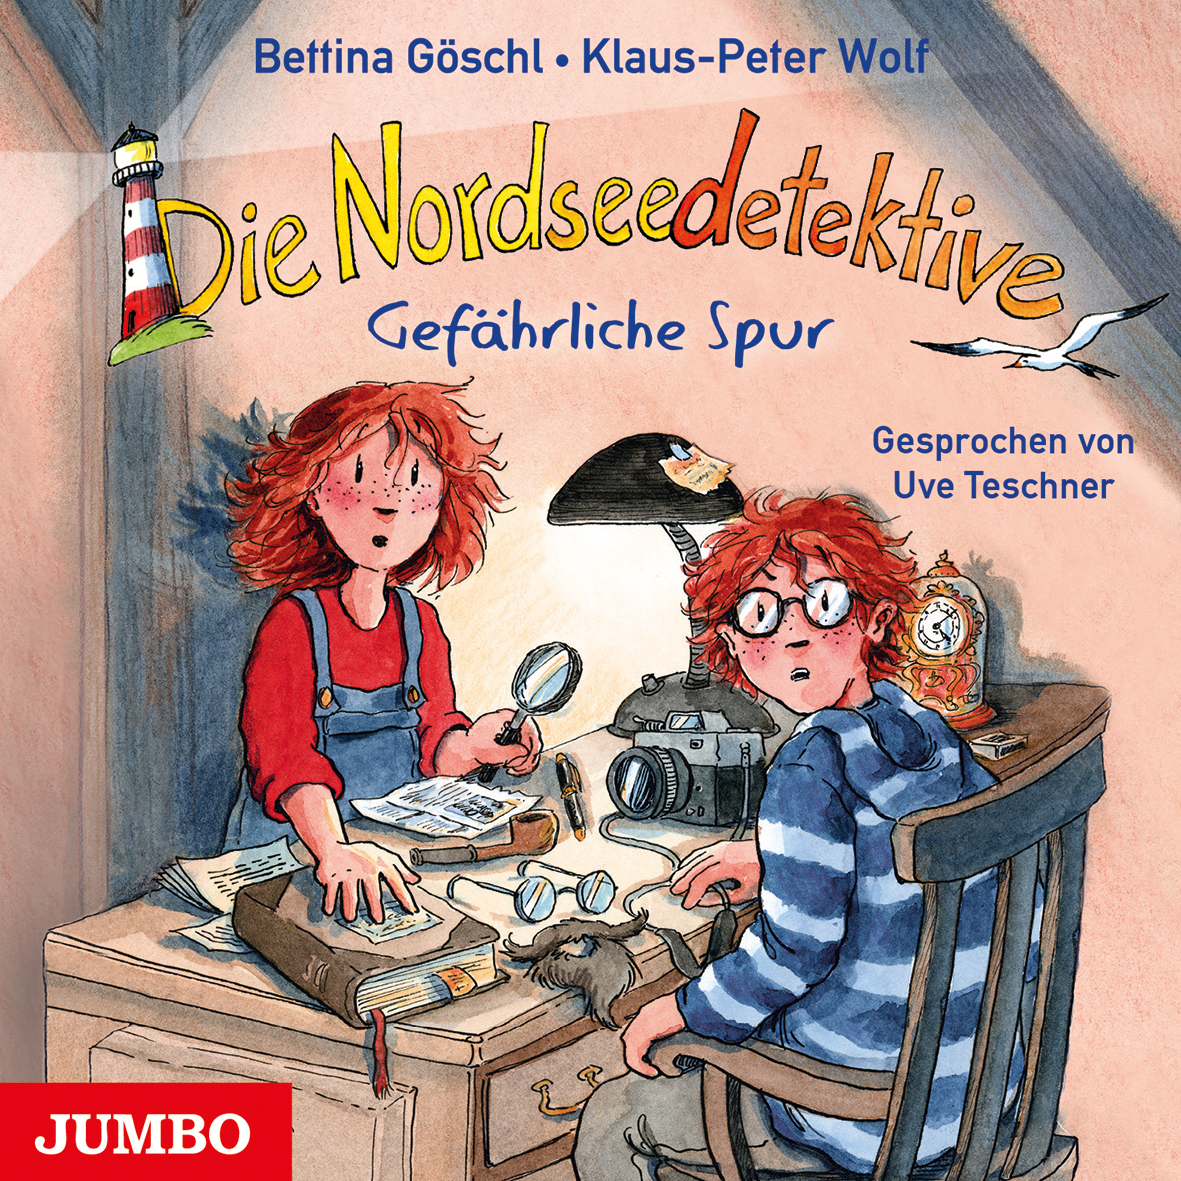 Bettina Goeschl_Klaus-Peter Wolf_Gefaehrliche Spur_Die Nordseedetektive 10